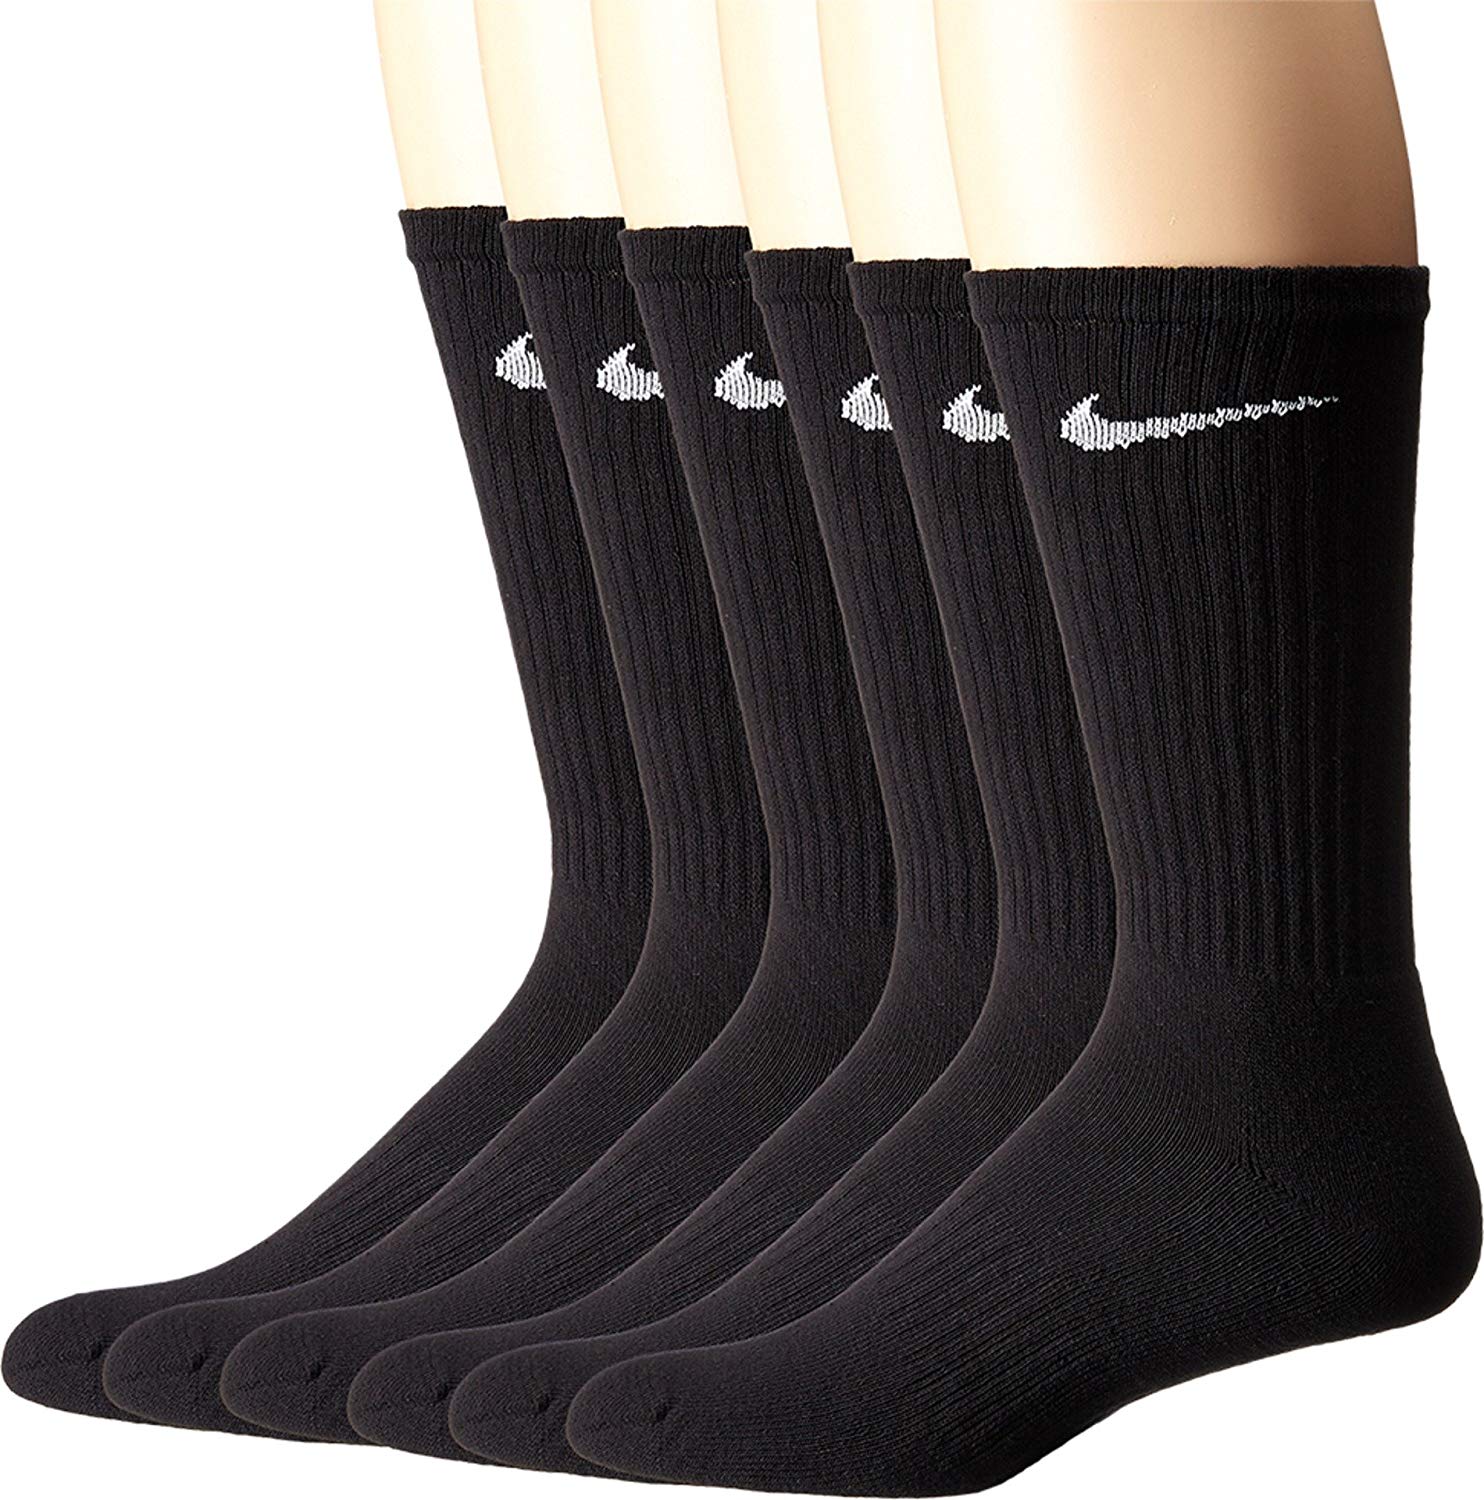 nike high socks